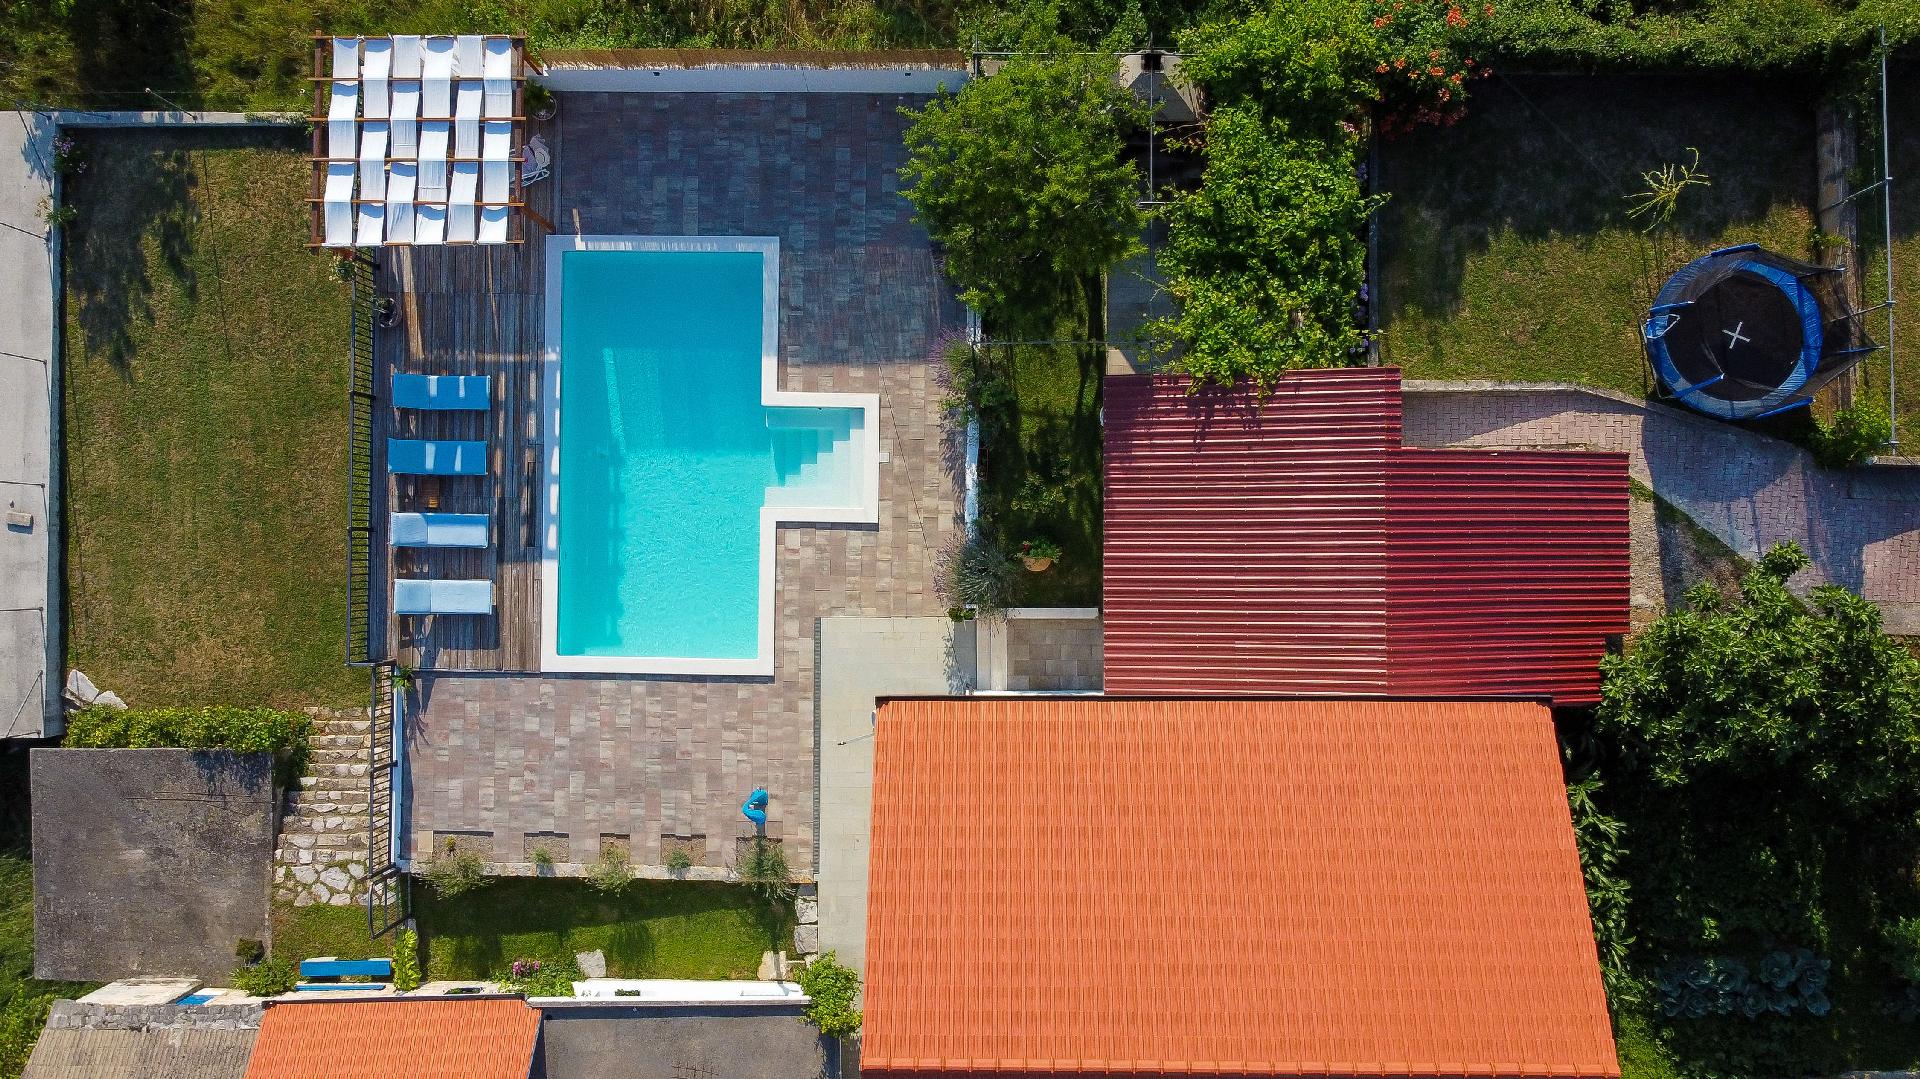 Ferienhaus mit Privatpool für 5 Personen  + 3 Ferienwohnung in Kroatien